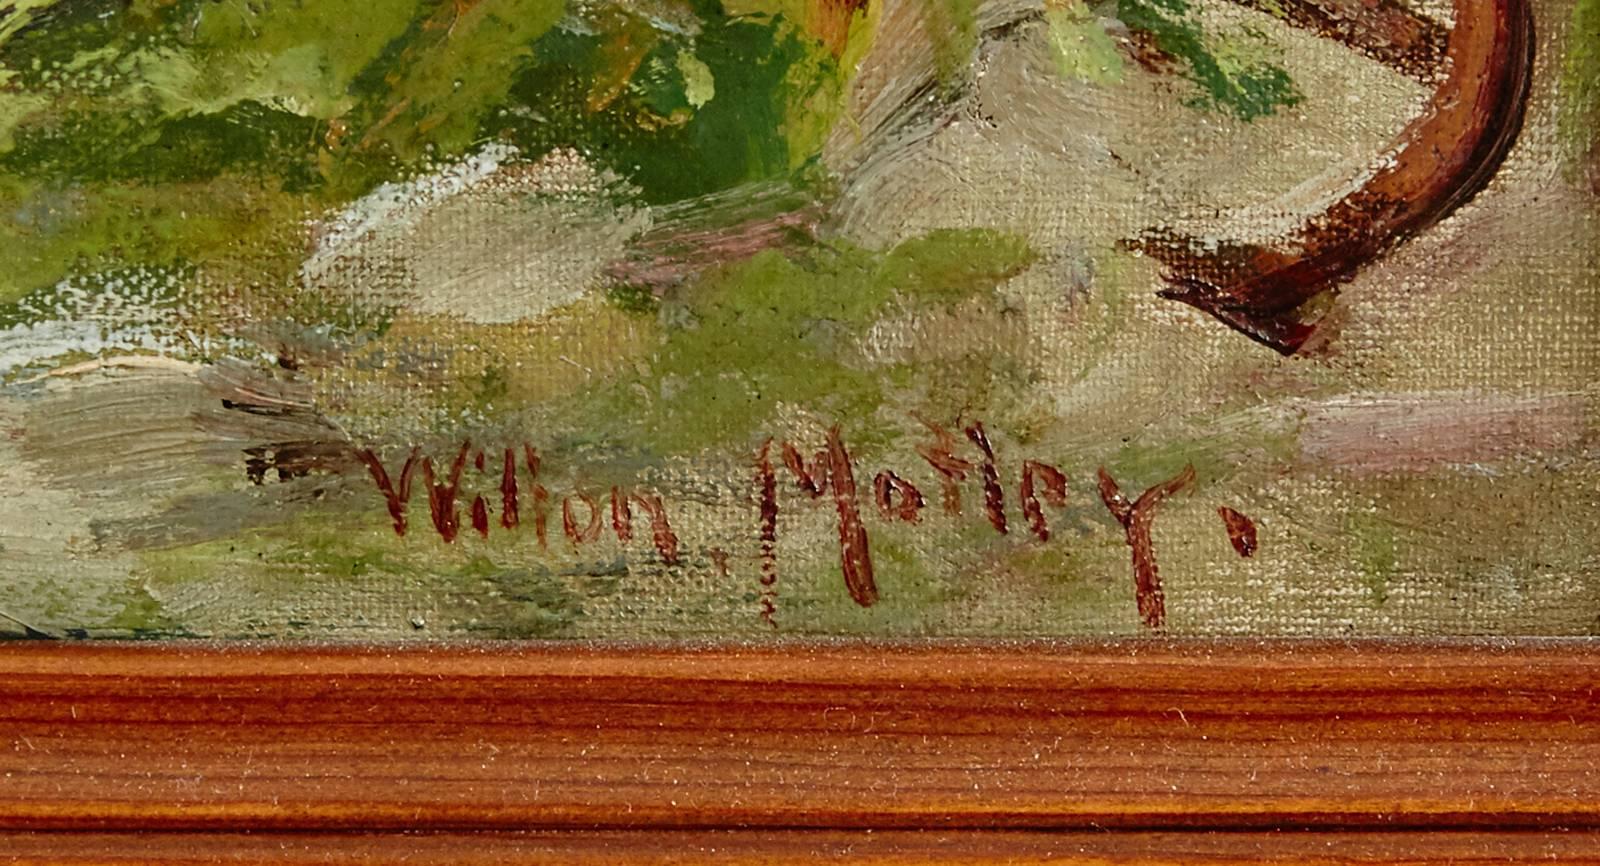 Wilton Motley motif côtier, signé, huile sur toile. Dimensions : 50 x 75 cm.